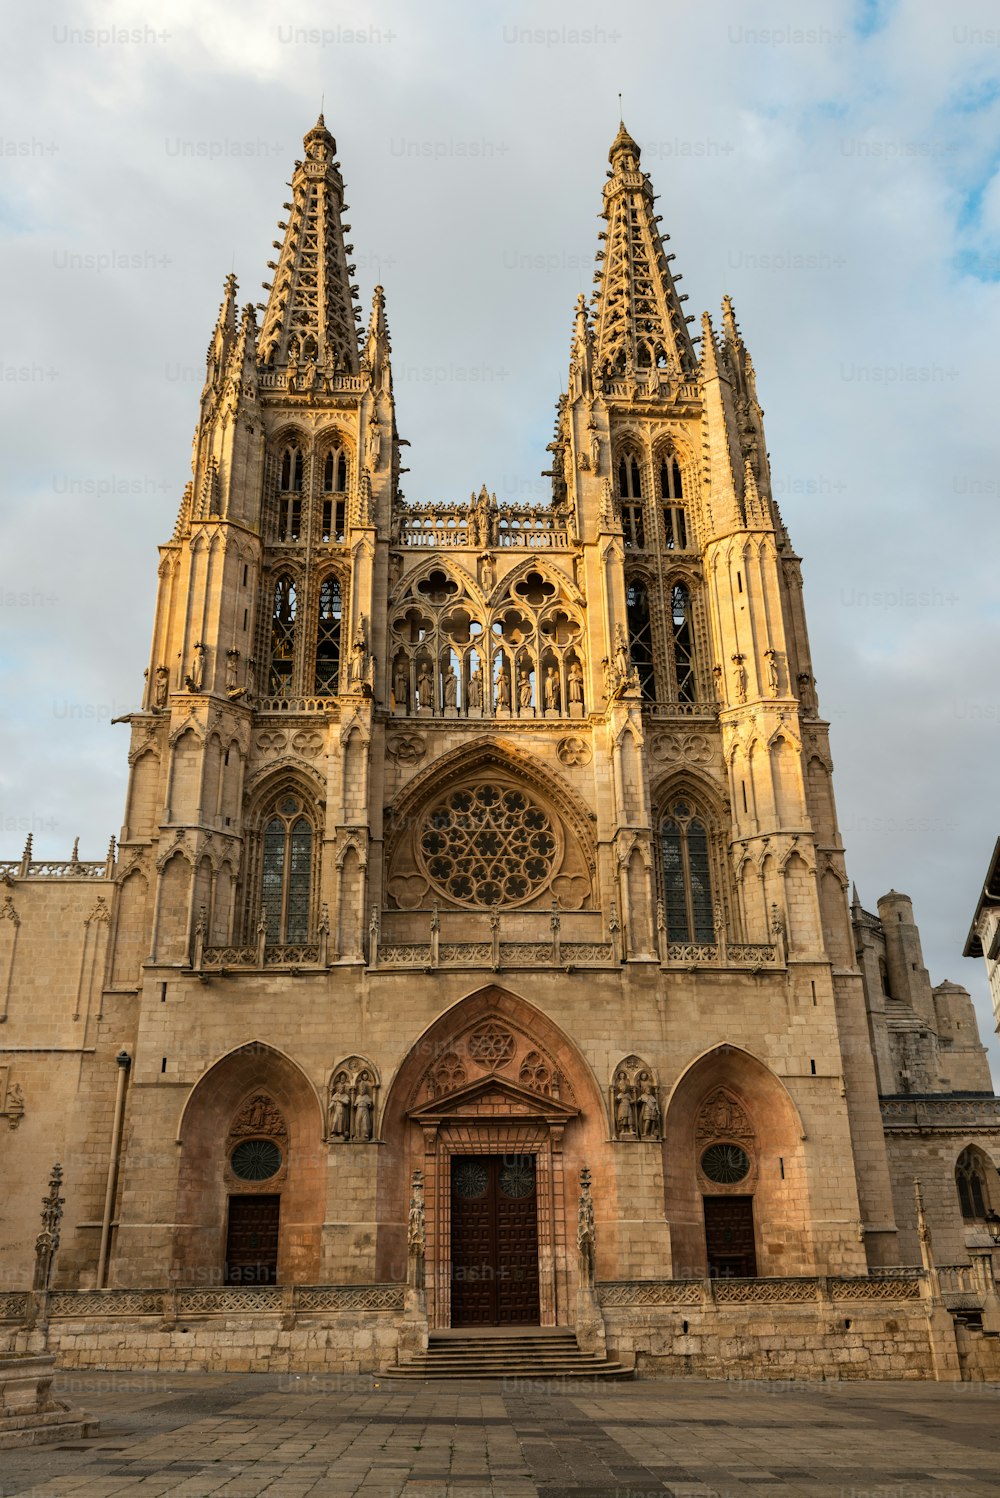 Vista lateral das duas torres Flamboyant ocidentais da catedral católica romana gótica em Burgos (1221-1567) iluminada pelo sol poente, Espanha.